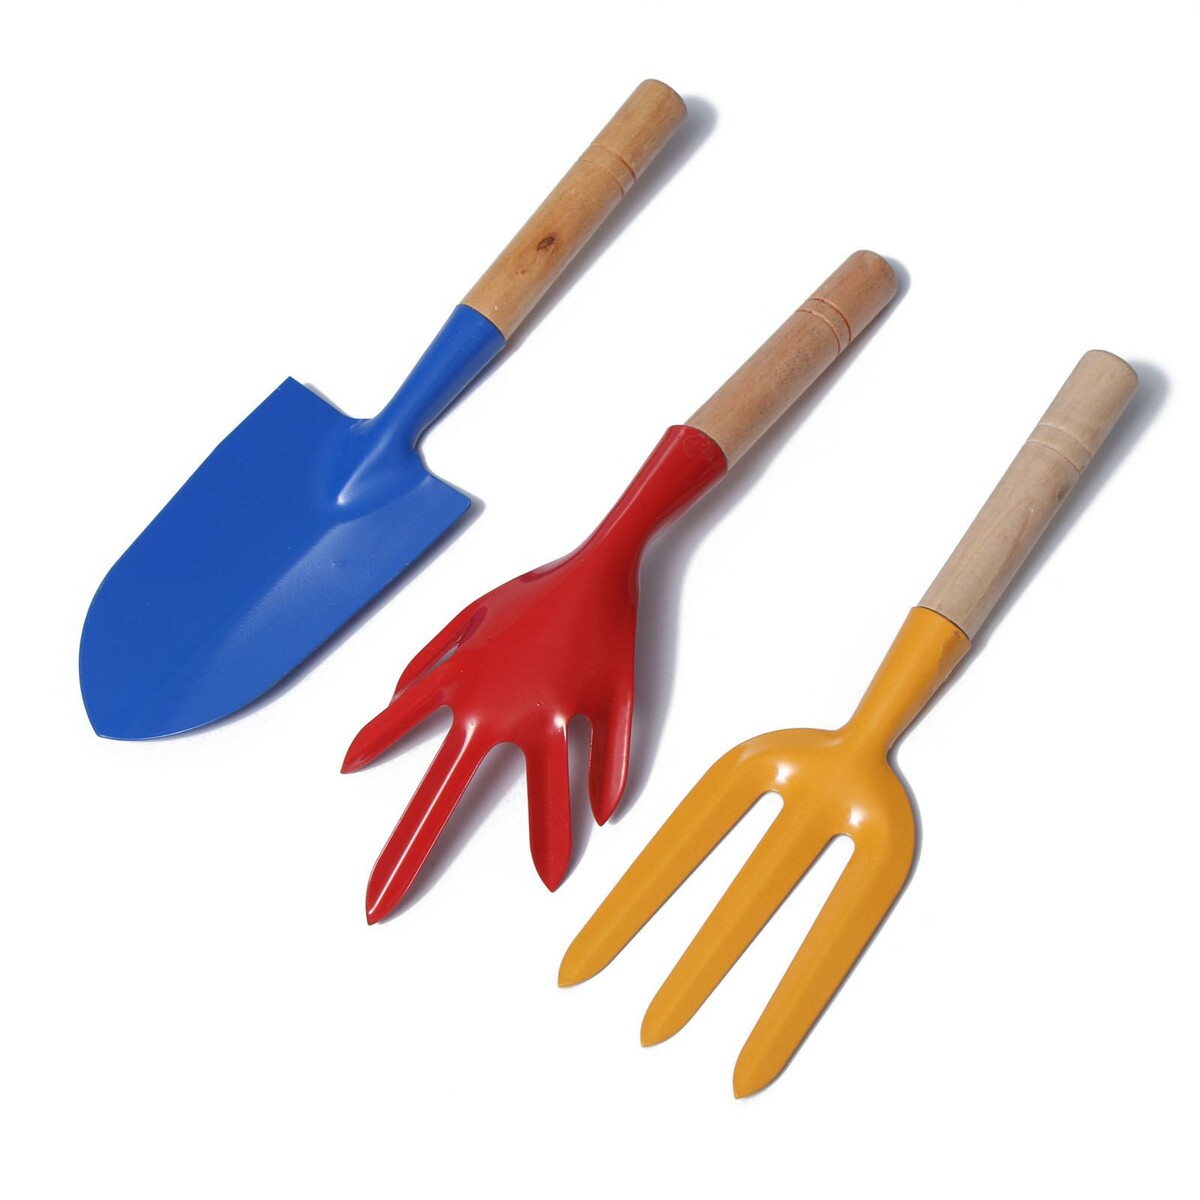 Набор садового инструмента, 3 предмета: совок, рыхлитель, вилка, длина 28 см, деревянные ручки набор совок и щётка paul masquin в ассортименте